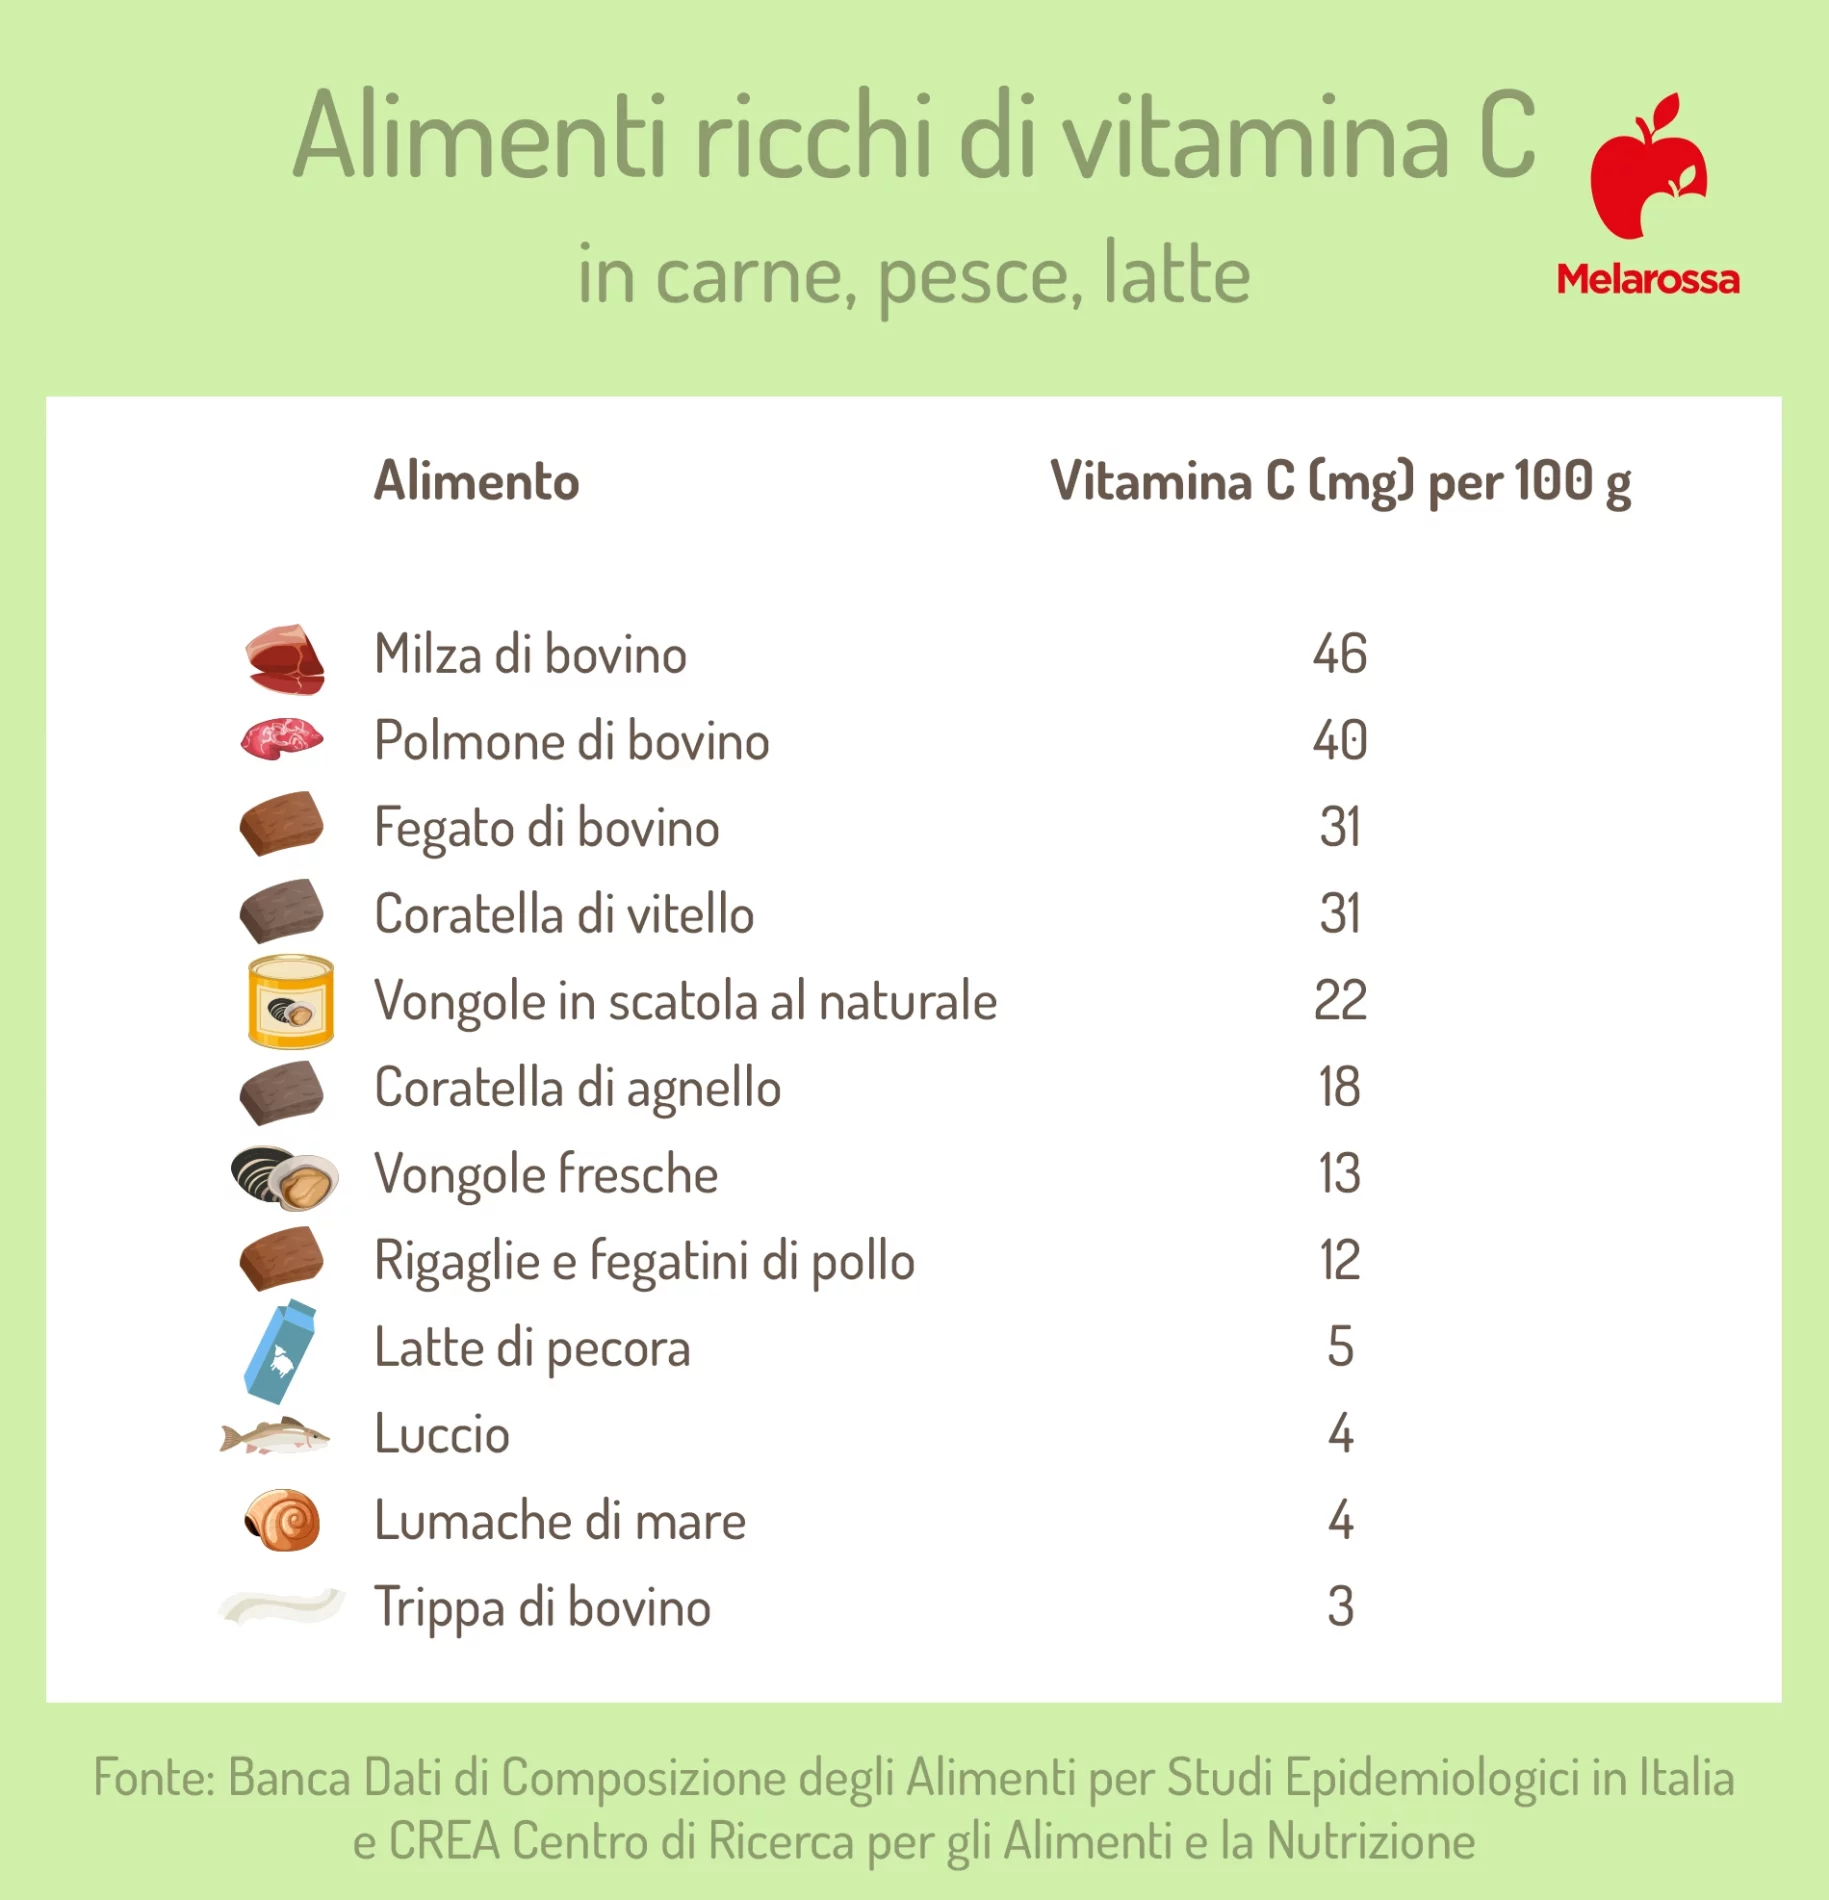 la classifica degli alimenti ricchi di vitamina C in carne, pesce, latte